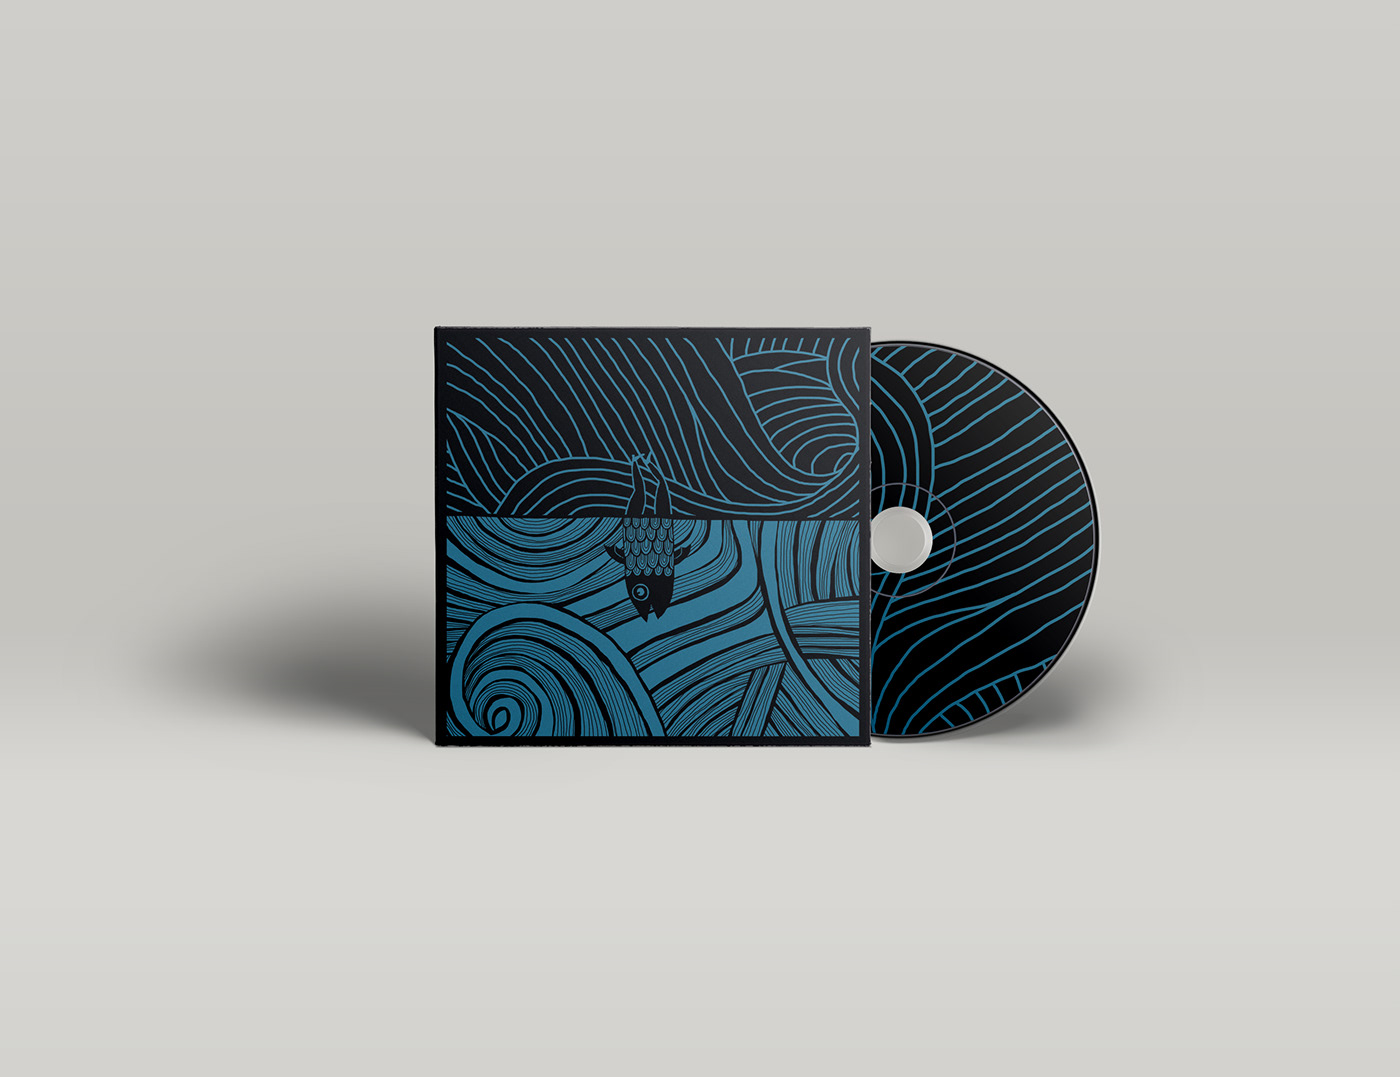 constantina album cover music Post rock fish sea Ocean graphic design  ILLUSTRATION 